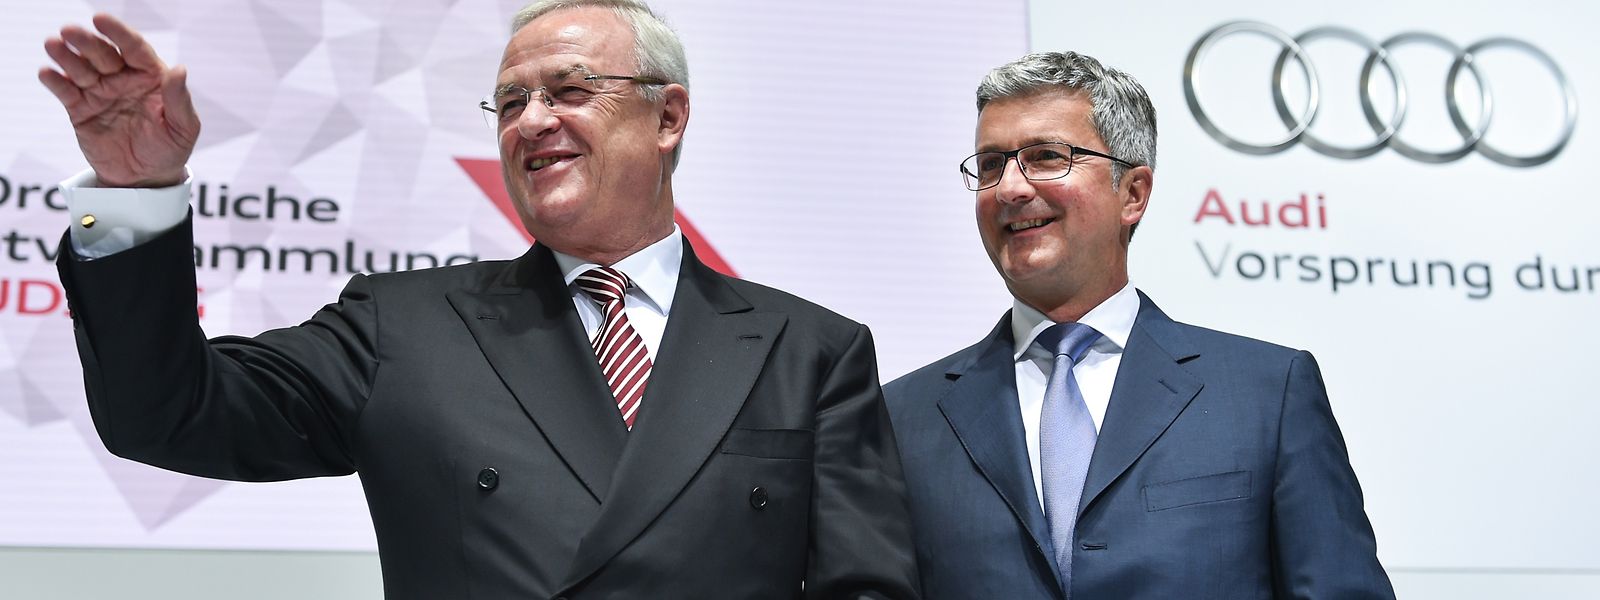 Audi-Chef Rupert Stadler (rechts), hier mit dem ehemaligen Aufsichtsratsvorsitzenden der Audi AG, Martin Winterkorn, gehört jetzt offiziell zum Kreis der Beschuldigten in der Diesel-Affäre. 